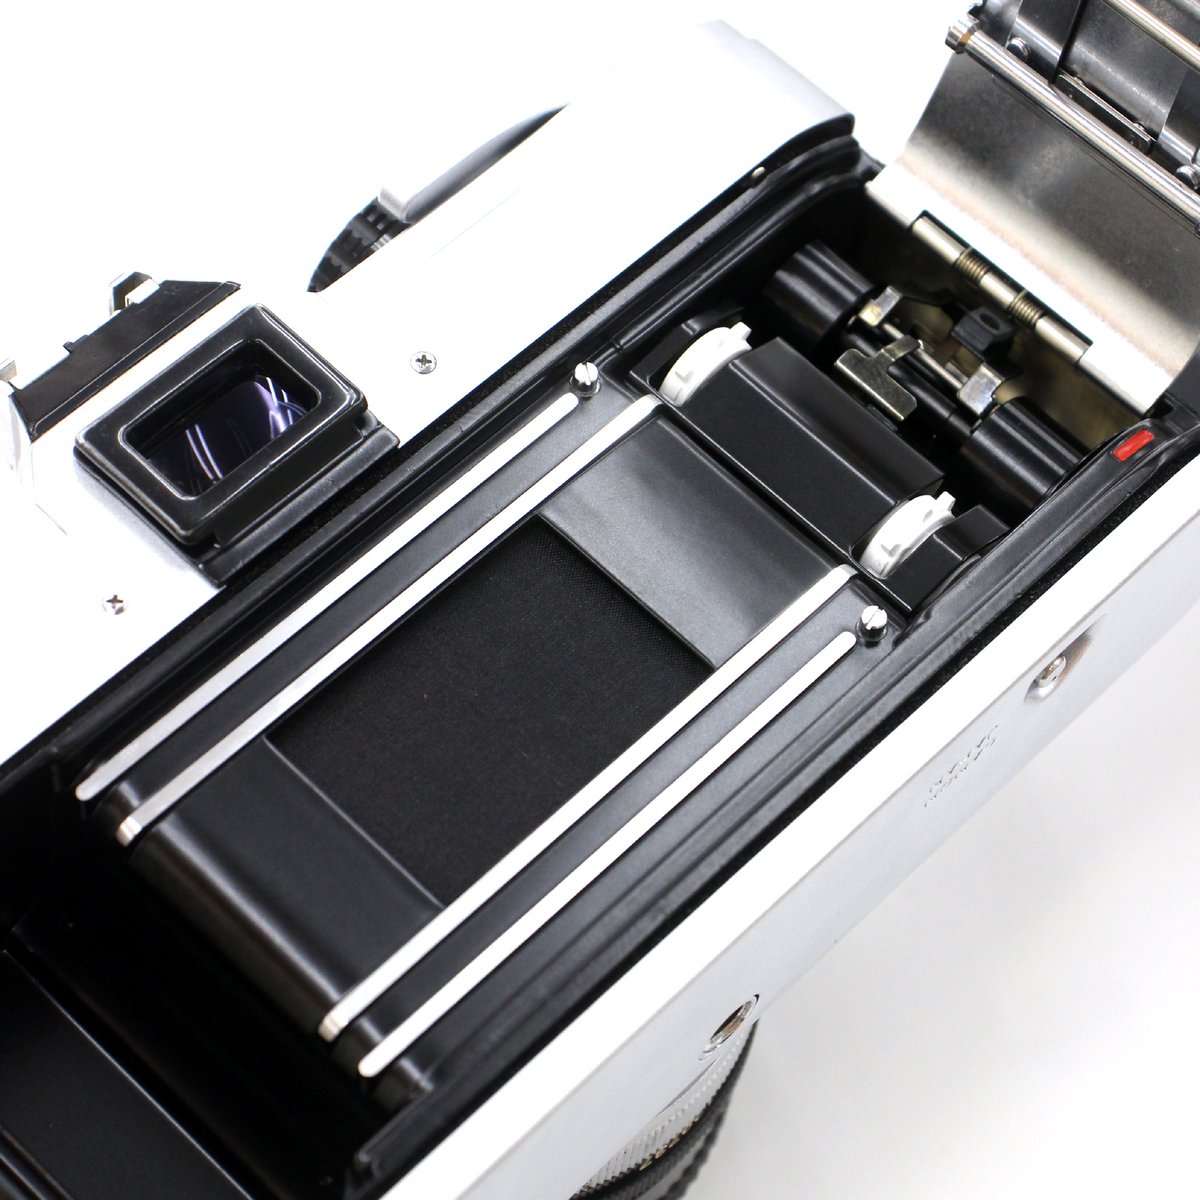 Canon FTb(オーバーホール済) + FD50mmF1.8 ￥33,000 by #青葉台 店

当時のフラッグシップF-1譲りの安定した基本性能を有する中堅機種。頑丈かつ基本に忠実な造りは機械式に馴染みの無い方でもすぐに慣れるハズ。QL機構でフィルムの装填が楽チンなのも◎です。

#CanonFTb
champcamera.co.jp/topics/?id=ao_…